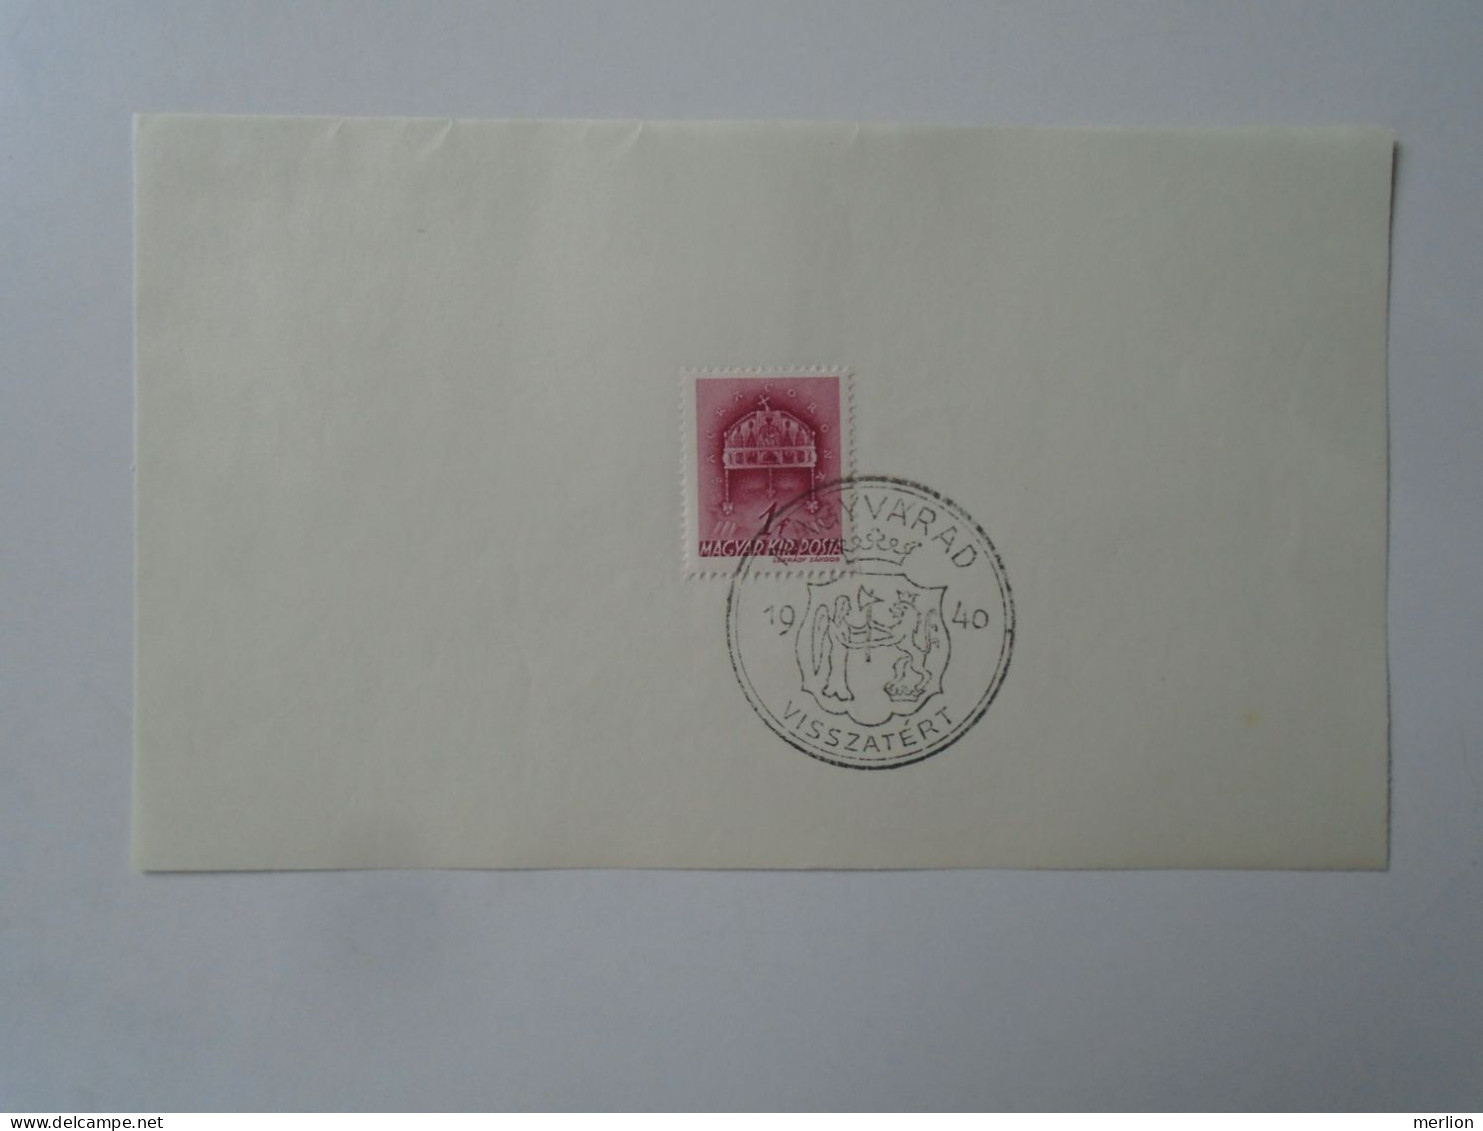 ZA451.41  Hungary - NAGYVÁRAD  Visszatért -Commemorative Postmark 1940 - Storia Postale